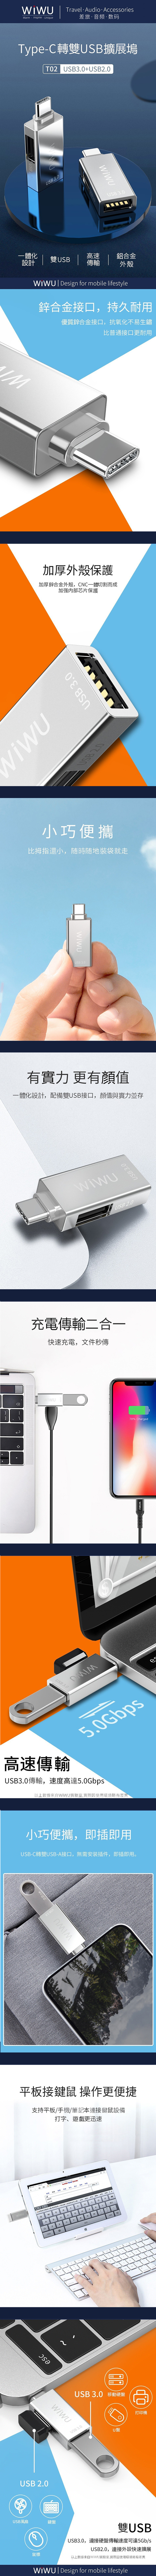 WIWU-T02-USB-TYPE-C-HUB-1.jpg